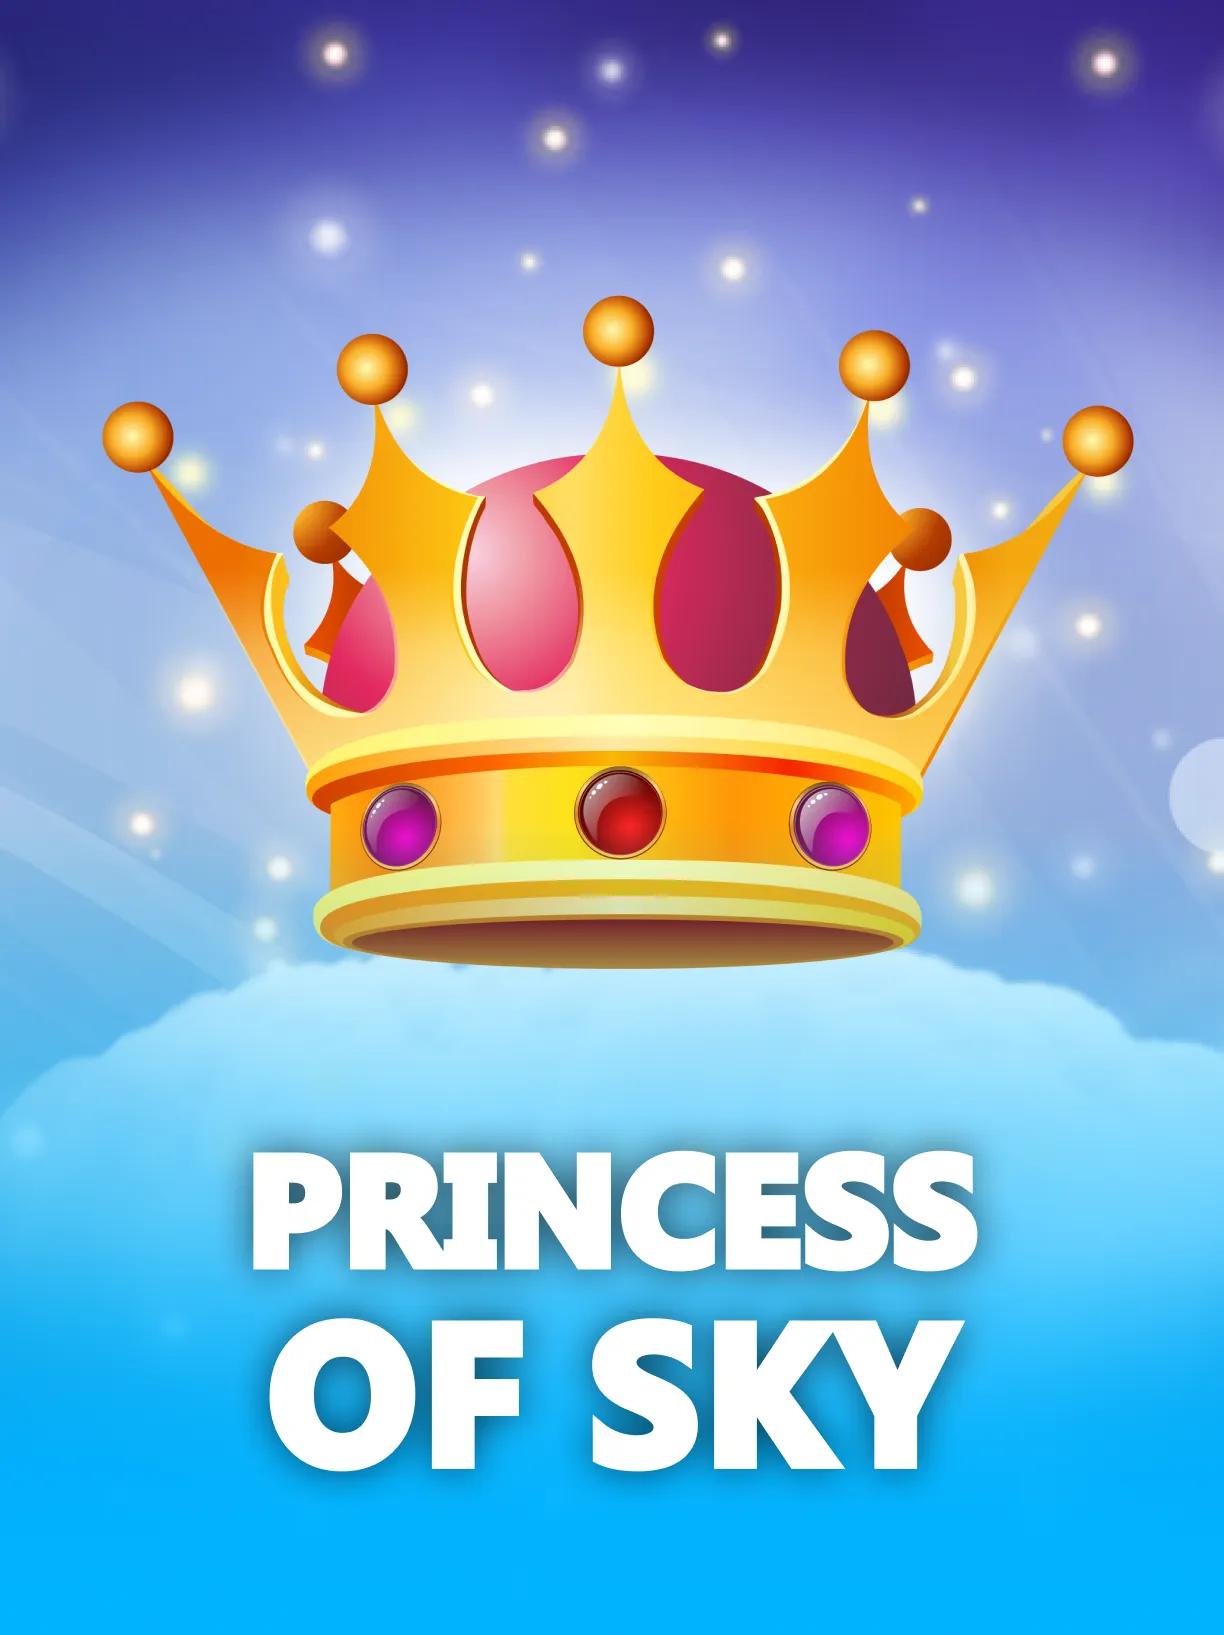 Princess_of_Sky_square.webp